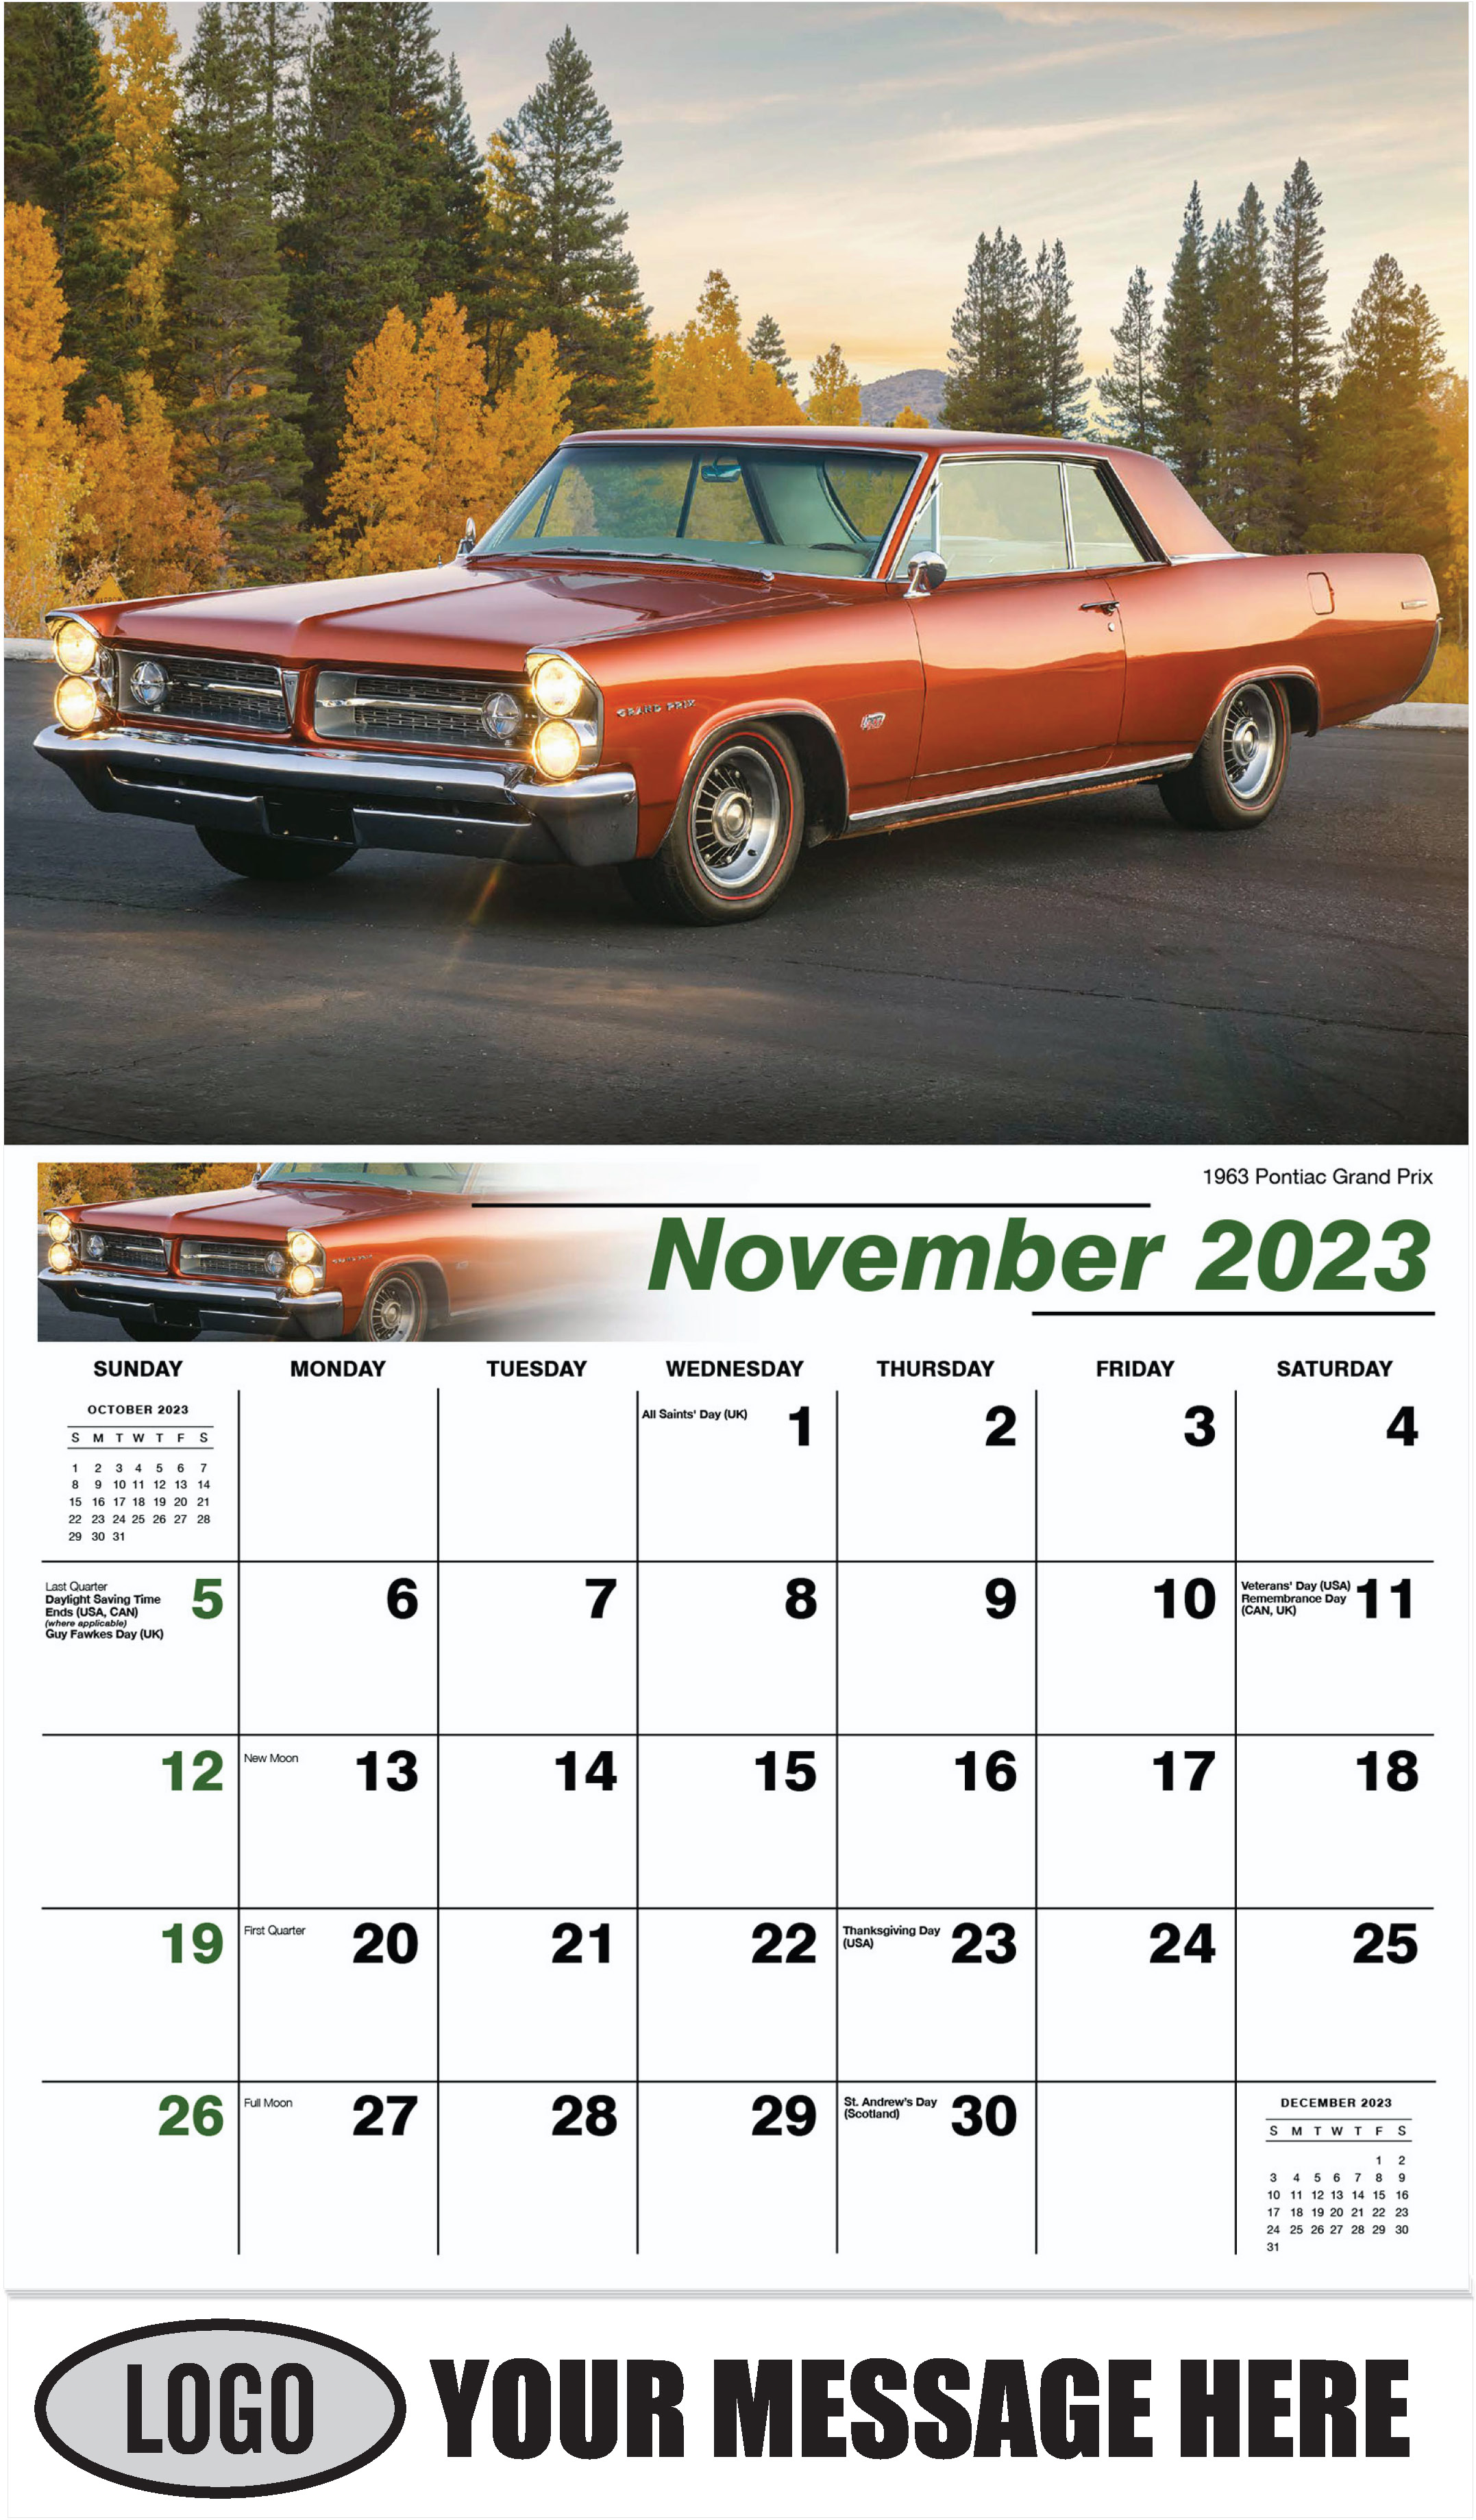 1963 Pontiac Grand Prix - November - GM Classics 2023 Promotional Calendar